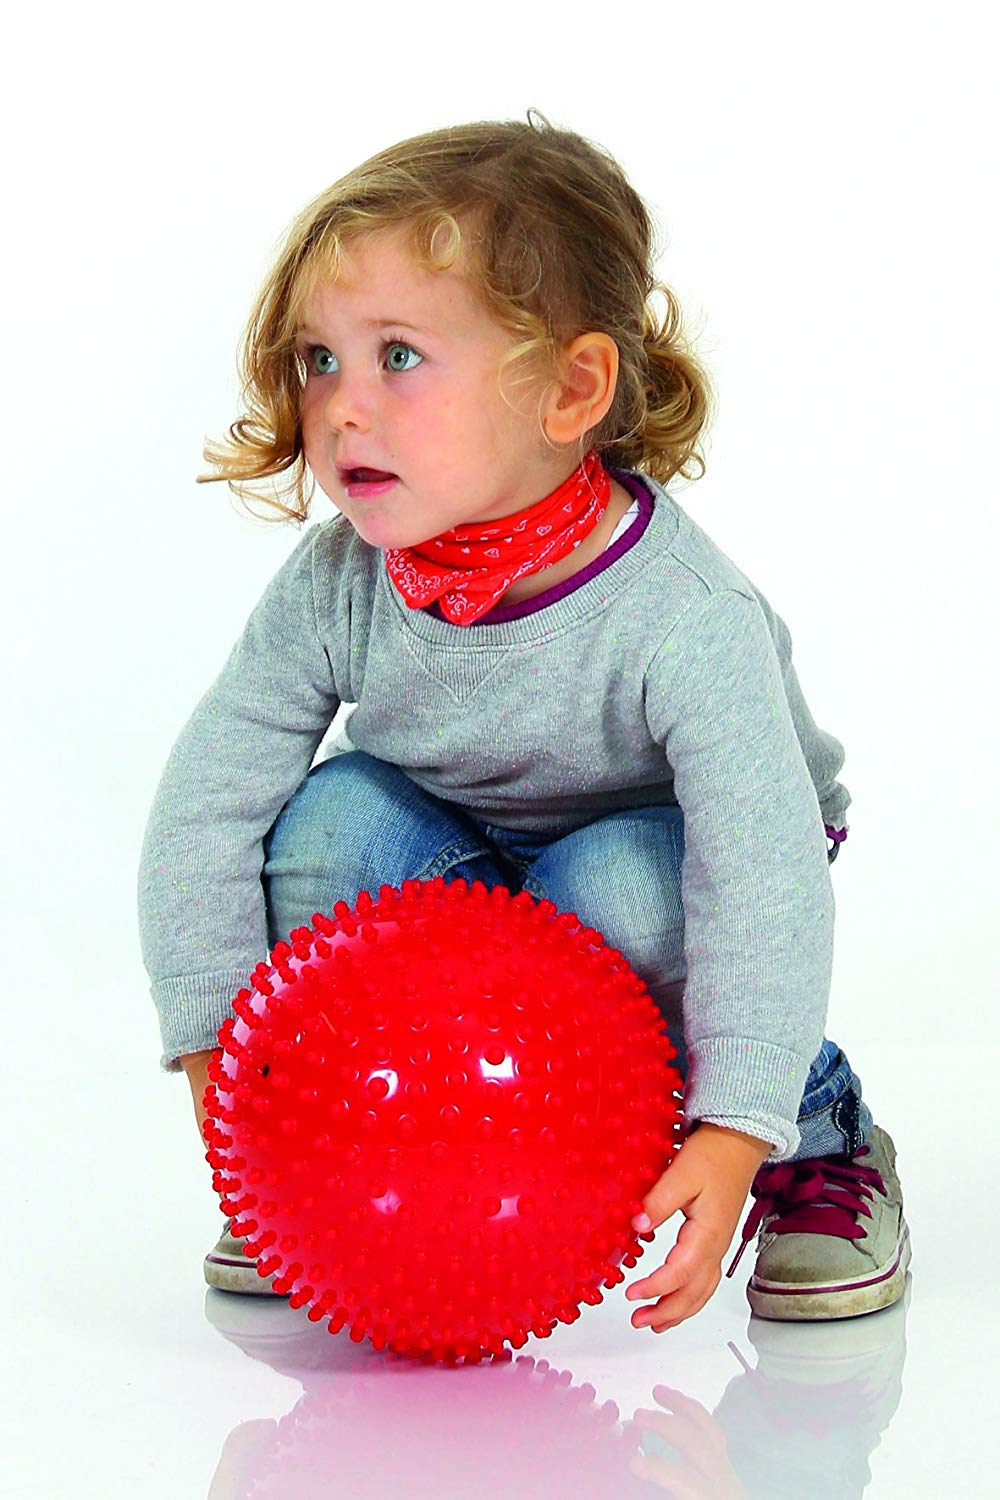 Ballon texturé Knobbly pour enfant